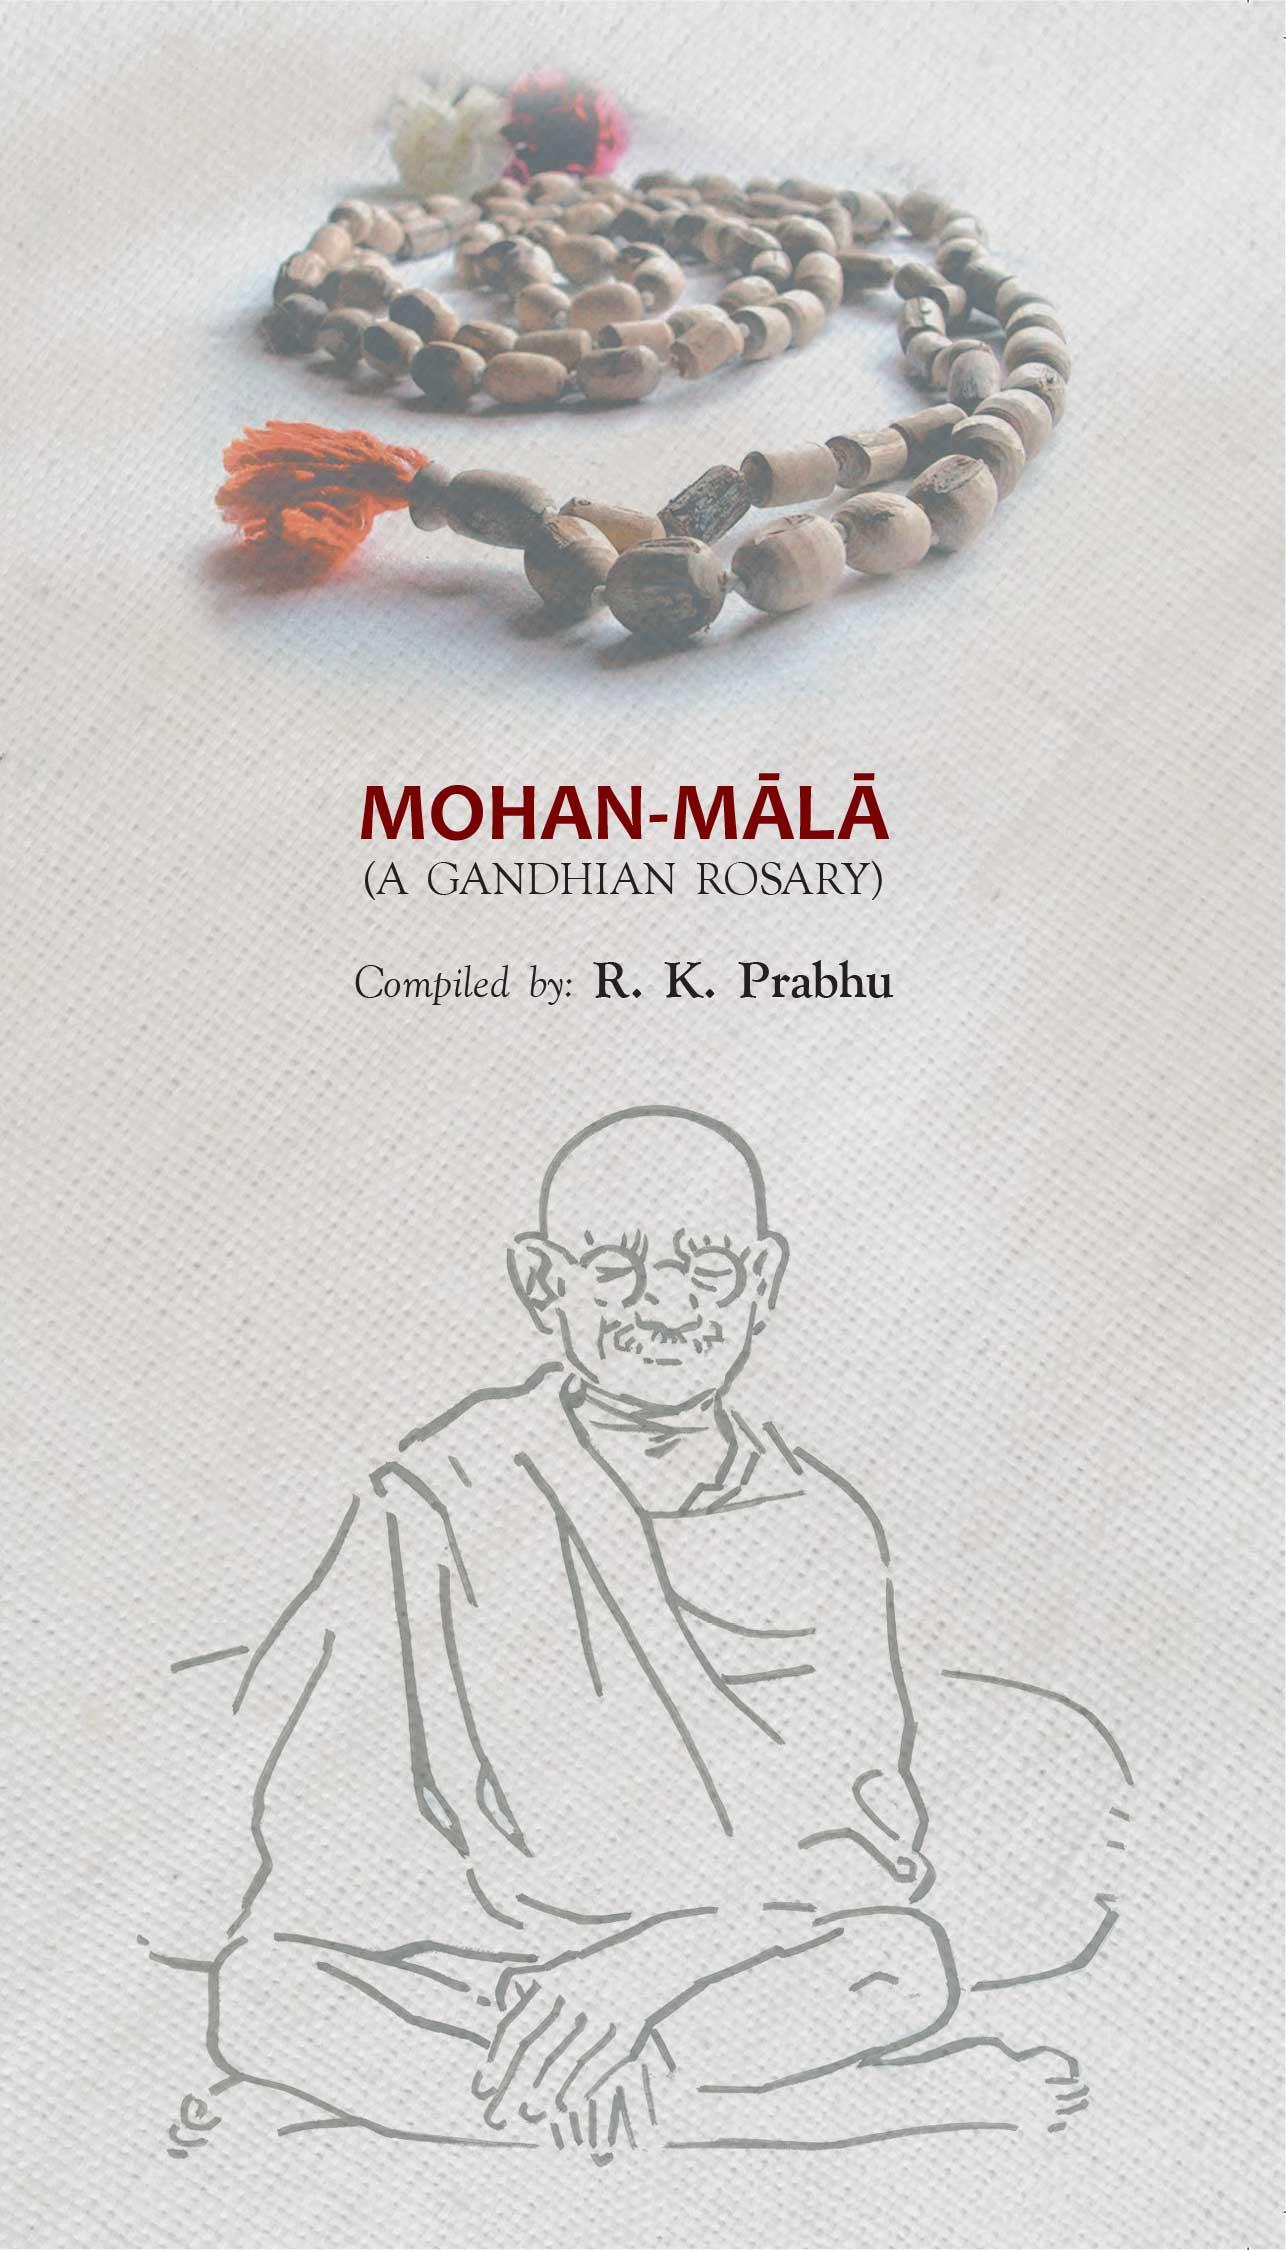 Mohan-Mala